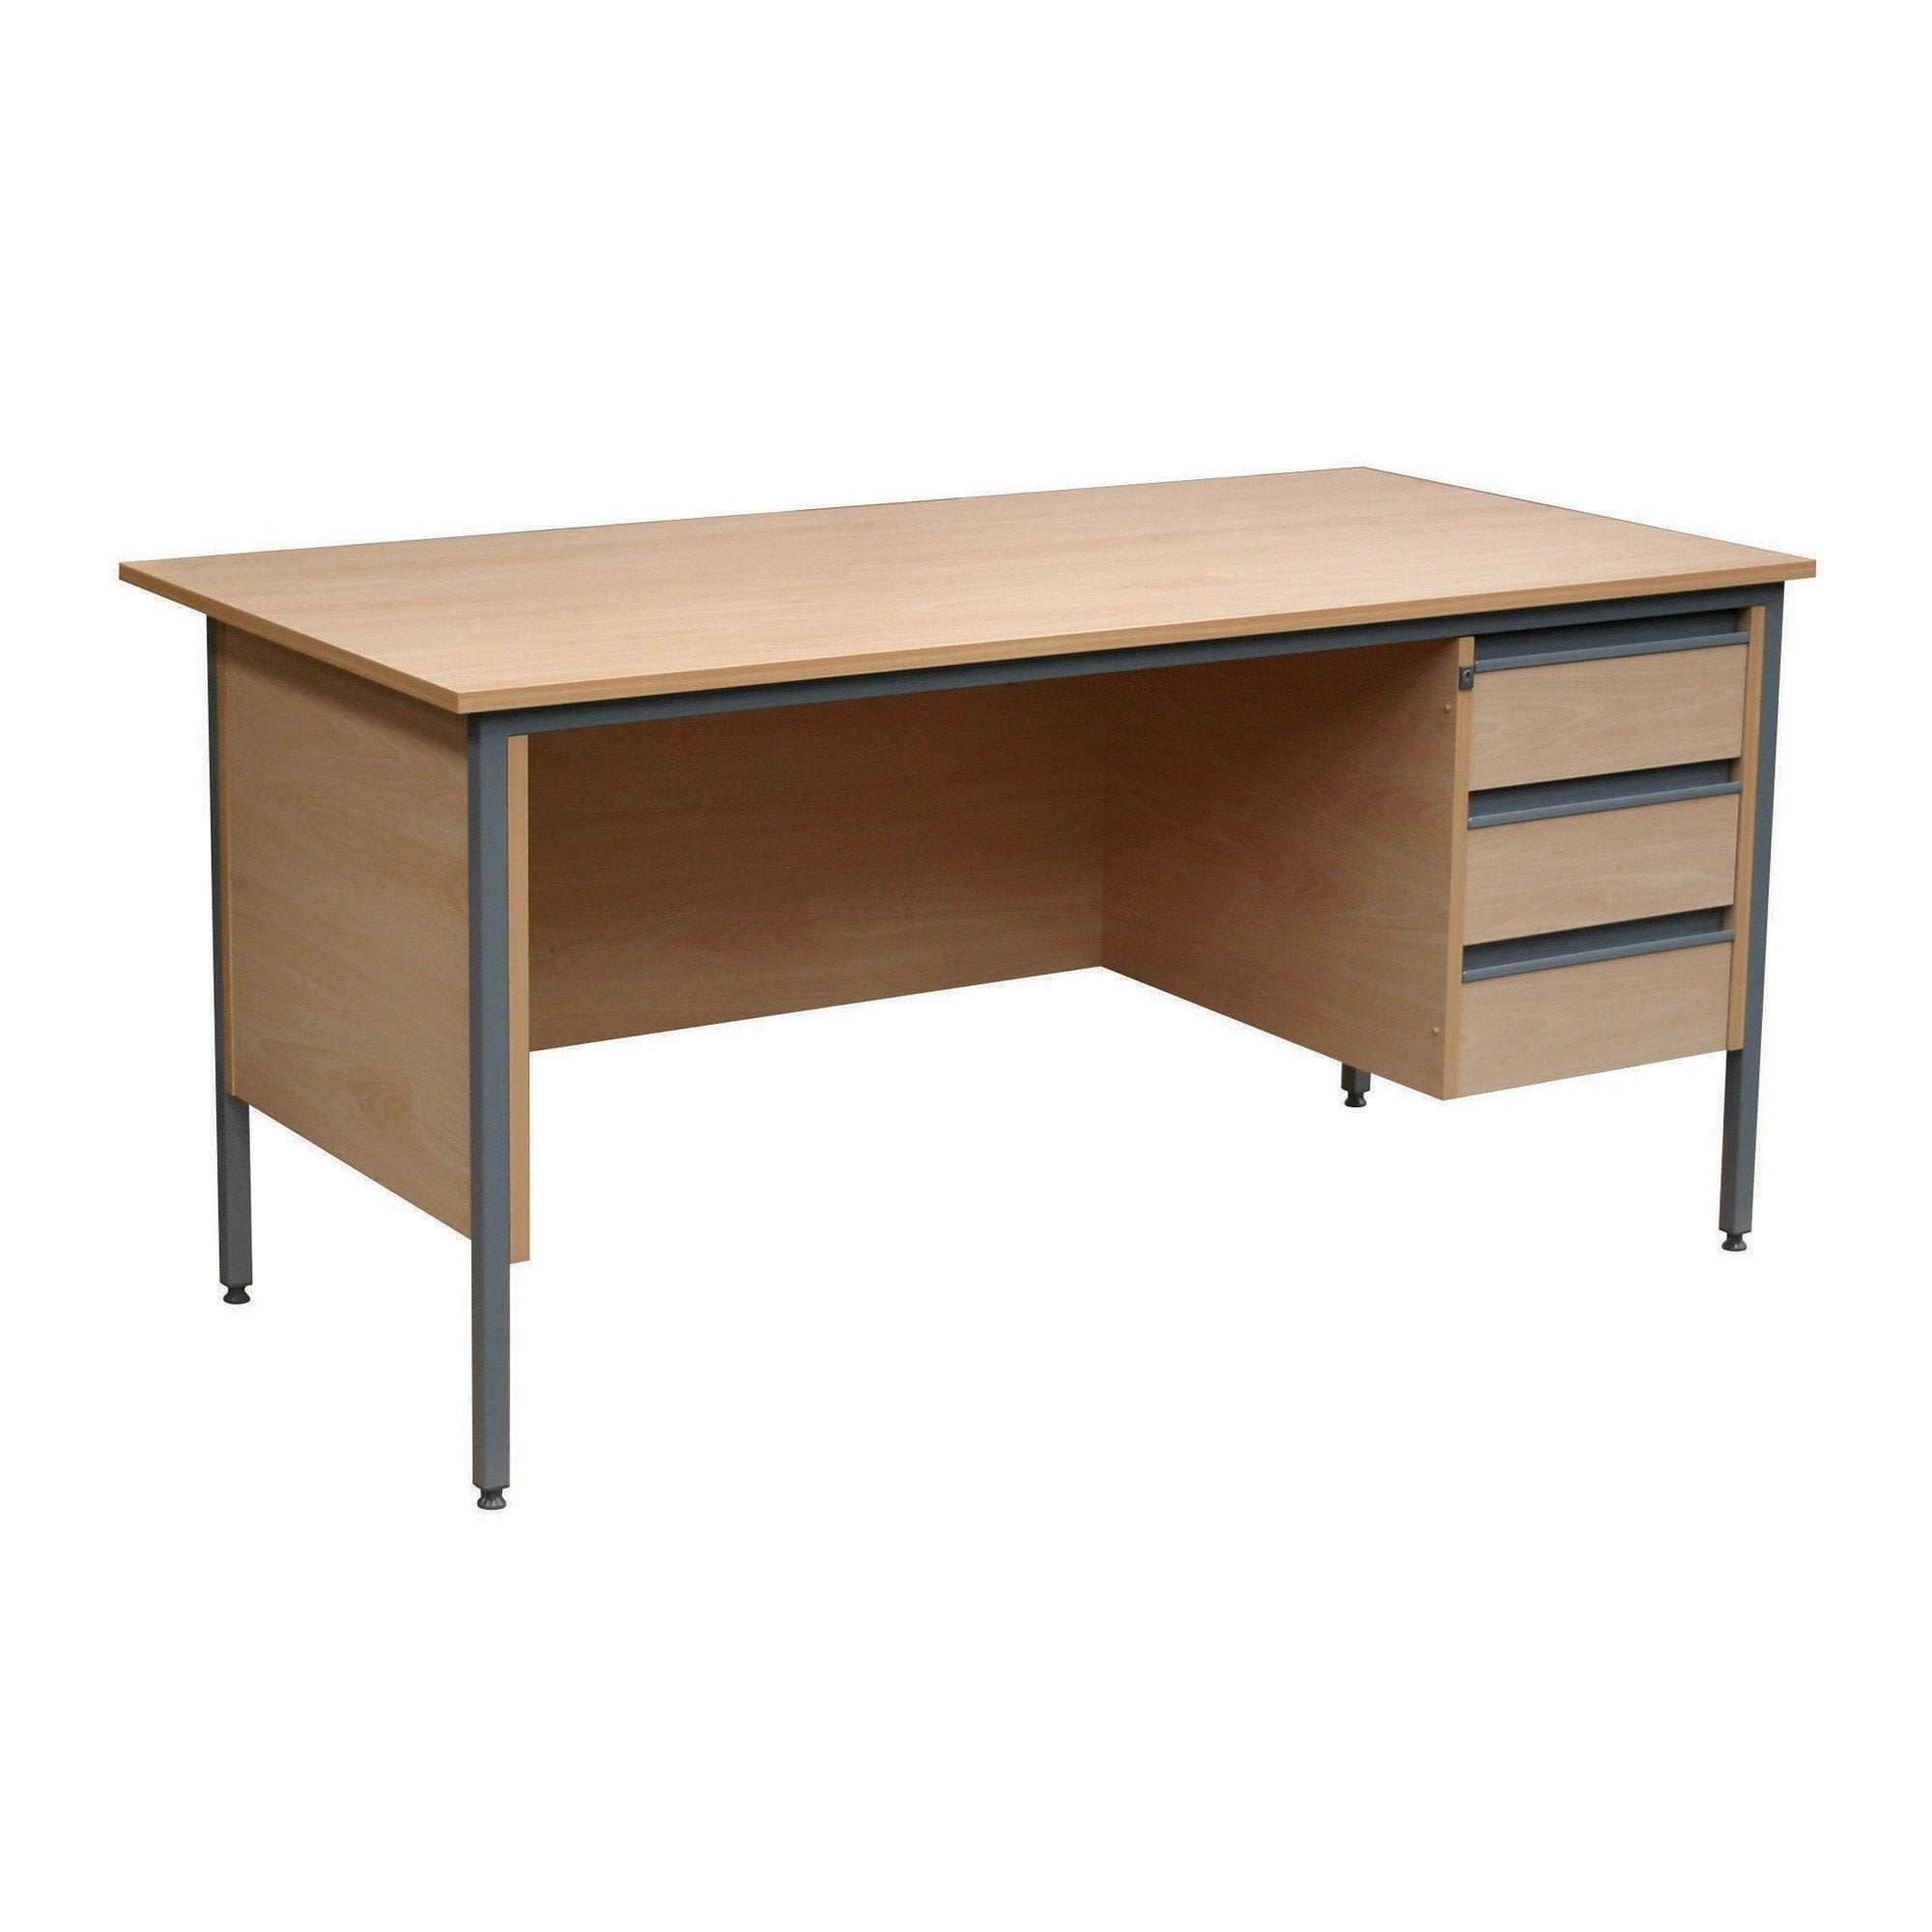 Teacher's Desks w1200 x d745 x h720 mm Teacher's Single Pedestal Desk w1200 x d745 x h720 mm